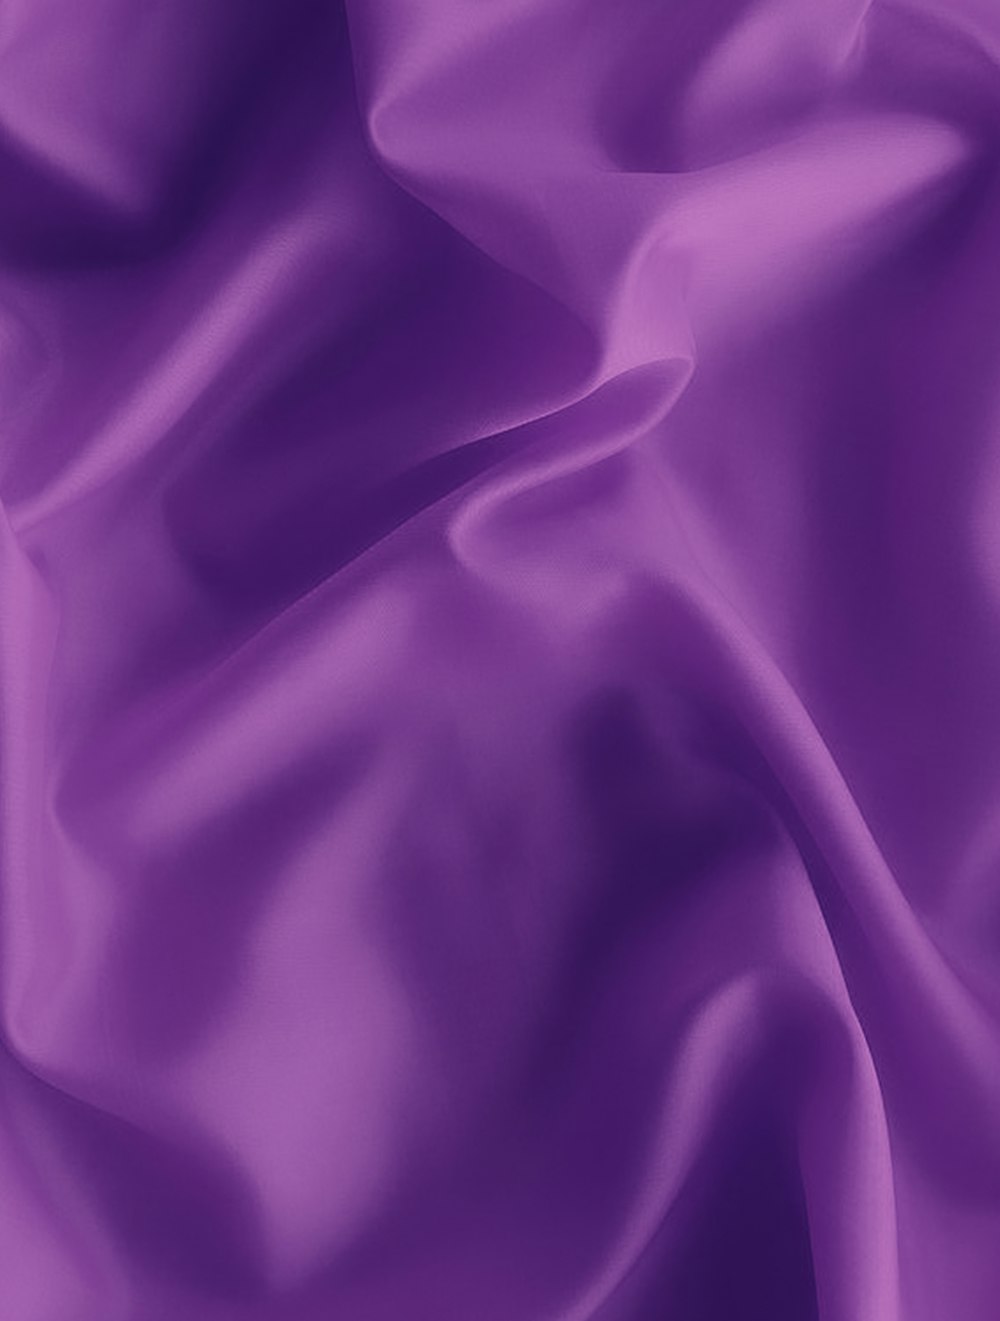 purple textile on white textile